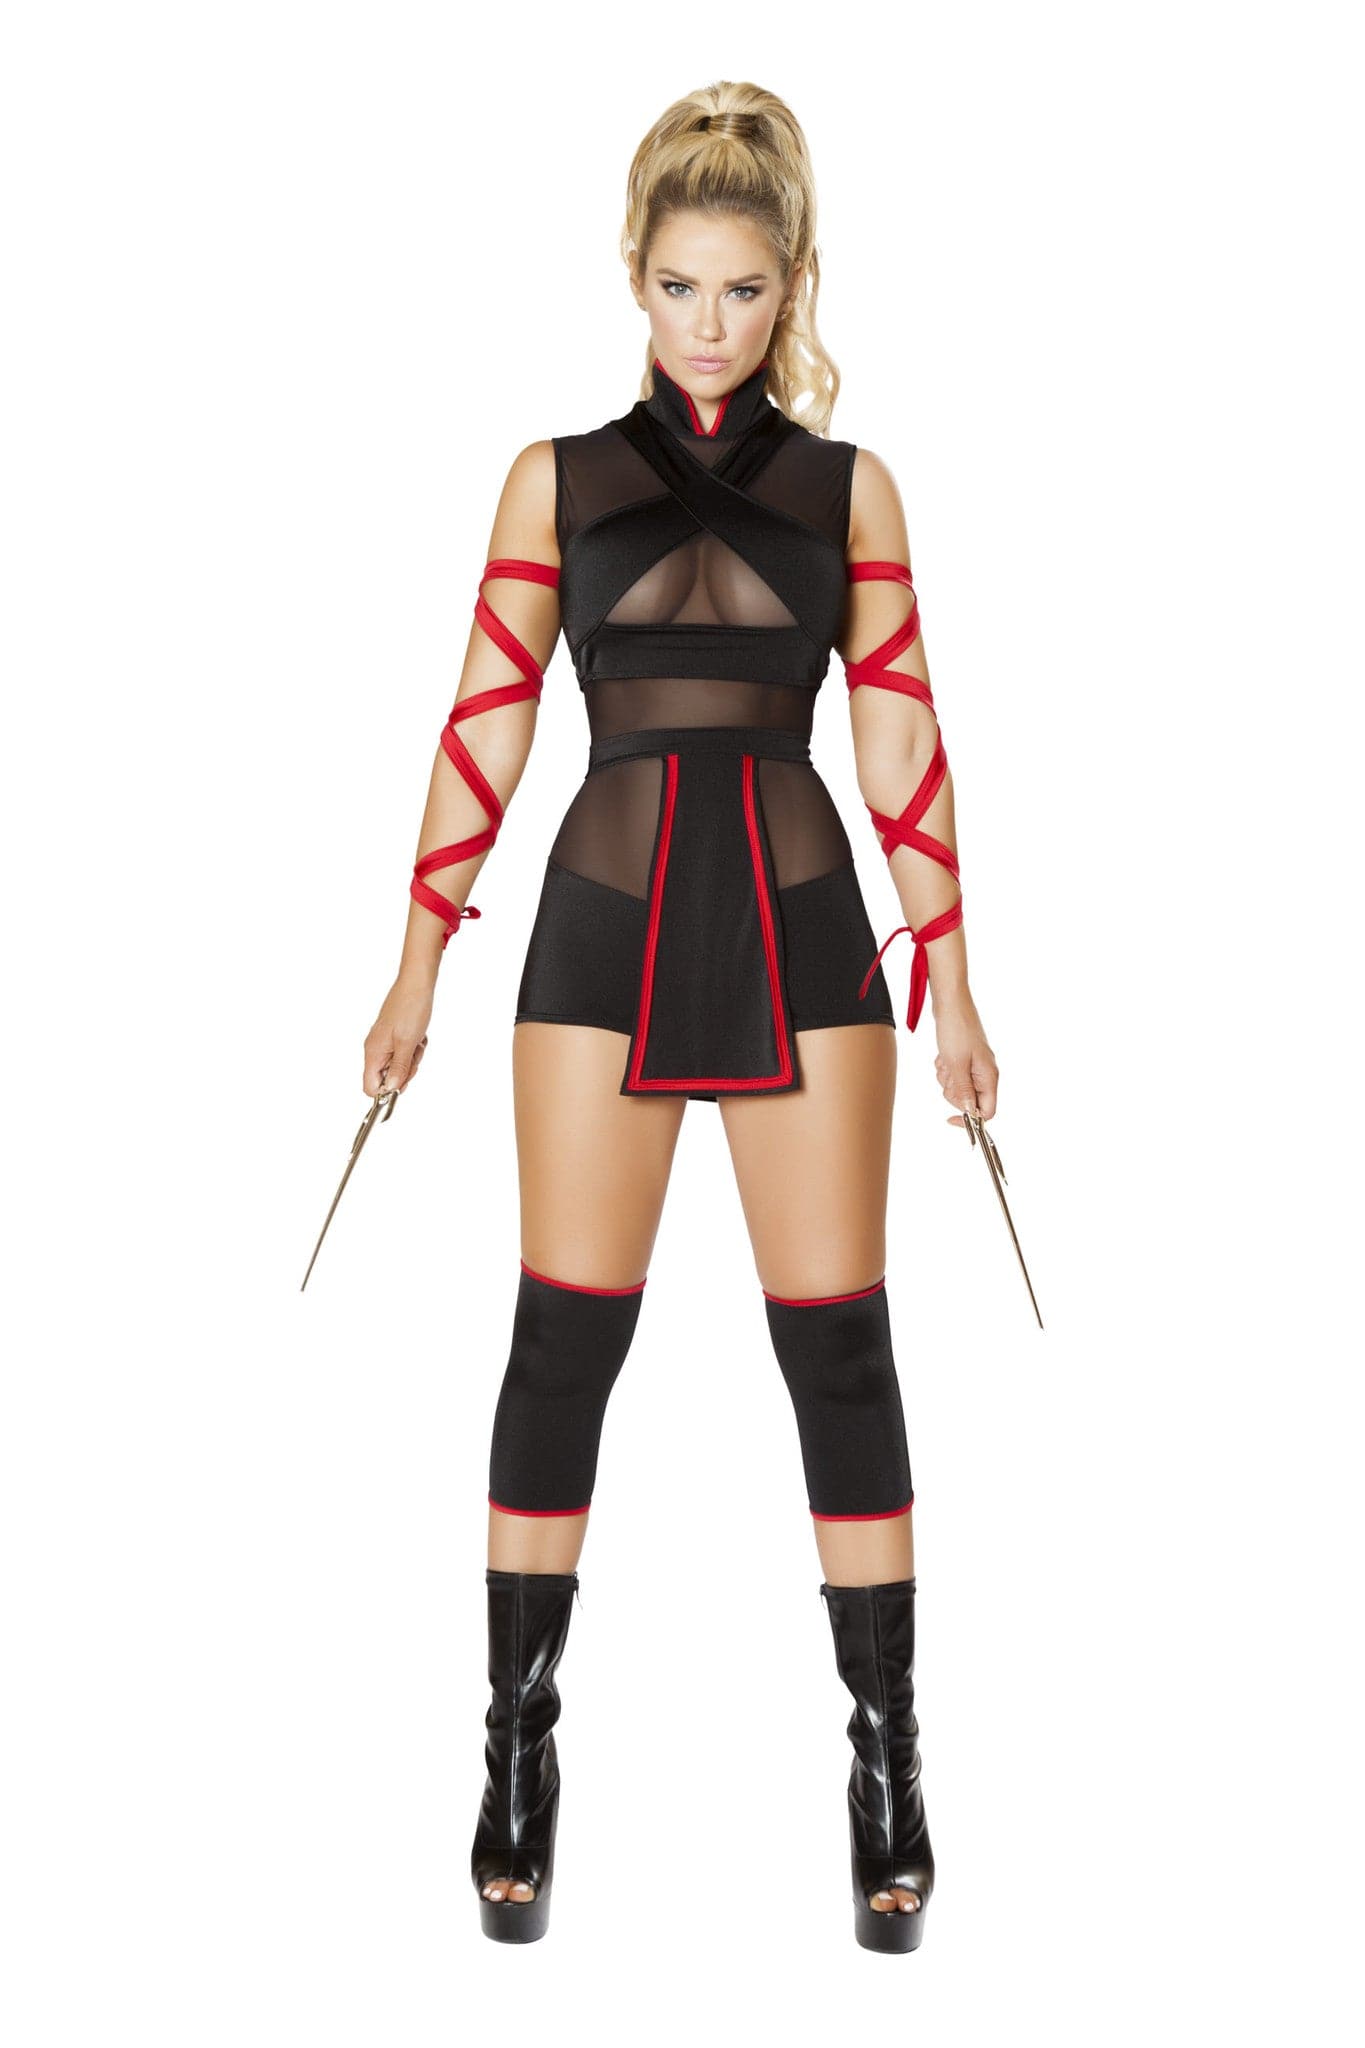 3pc. Ninja Striker Women's Costume - For Love of Lingerie